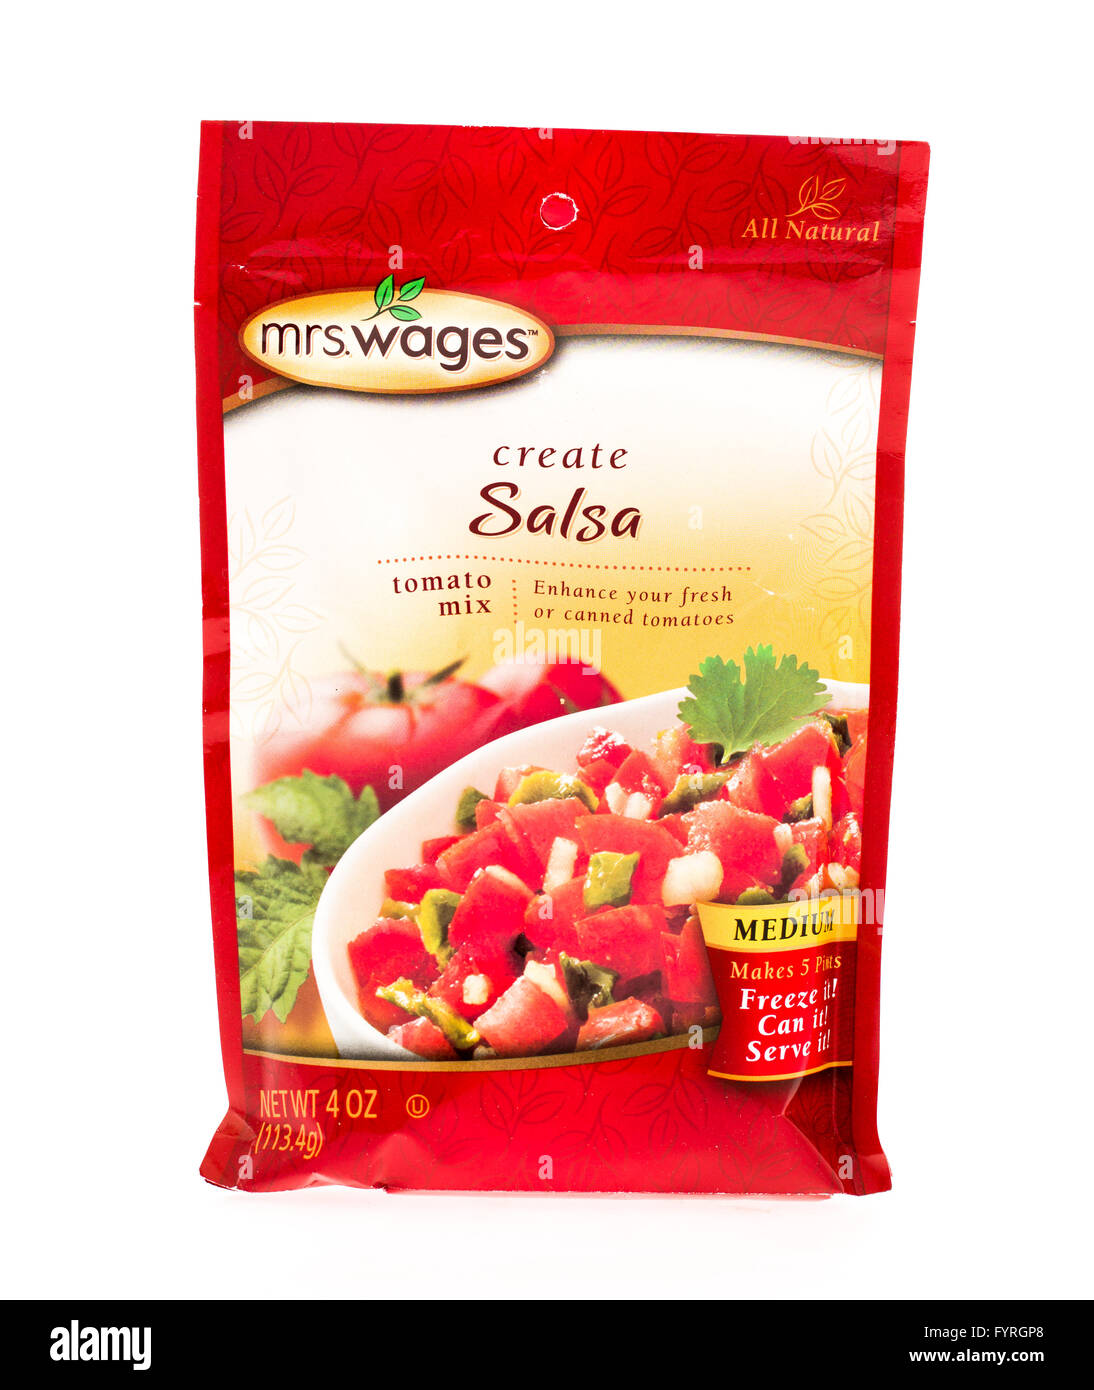 Winneconne, WI - 20 Aprile 2015: Pacchetto della sig.ra salari salsa mix utilizzato per la produzione di conserve. Foto Stock